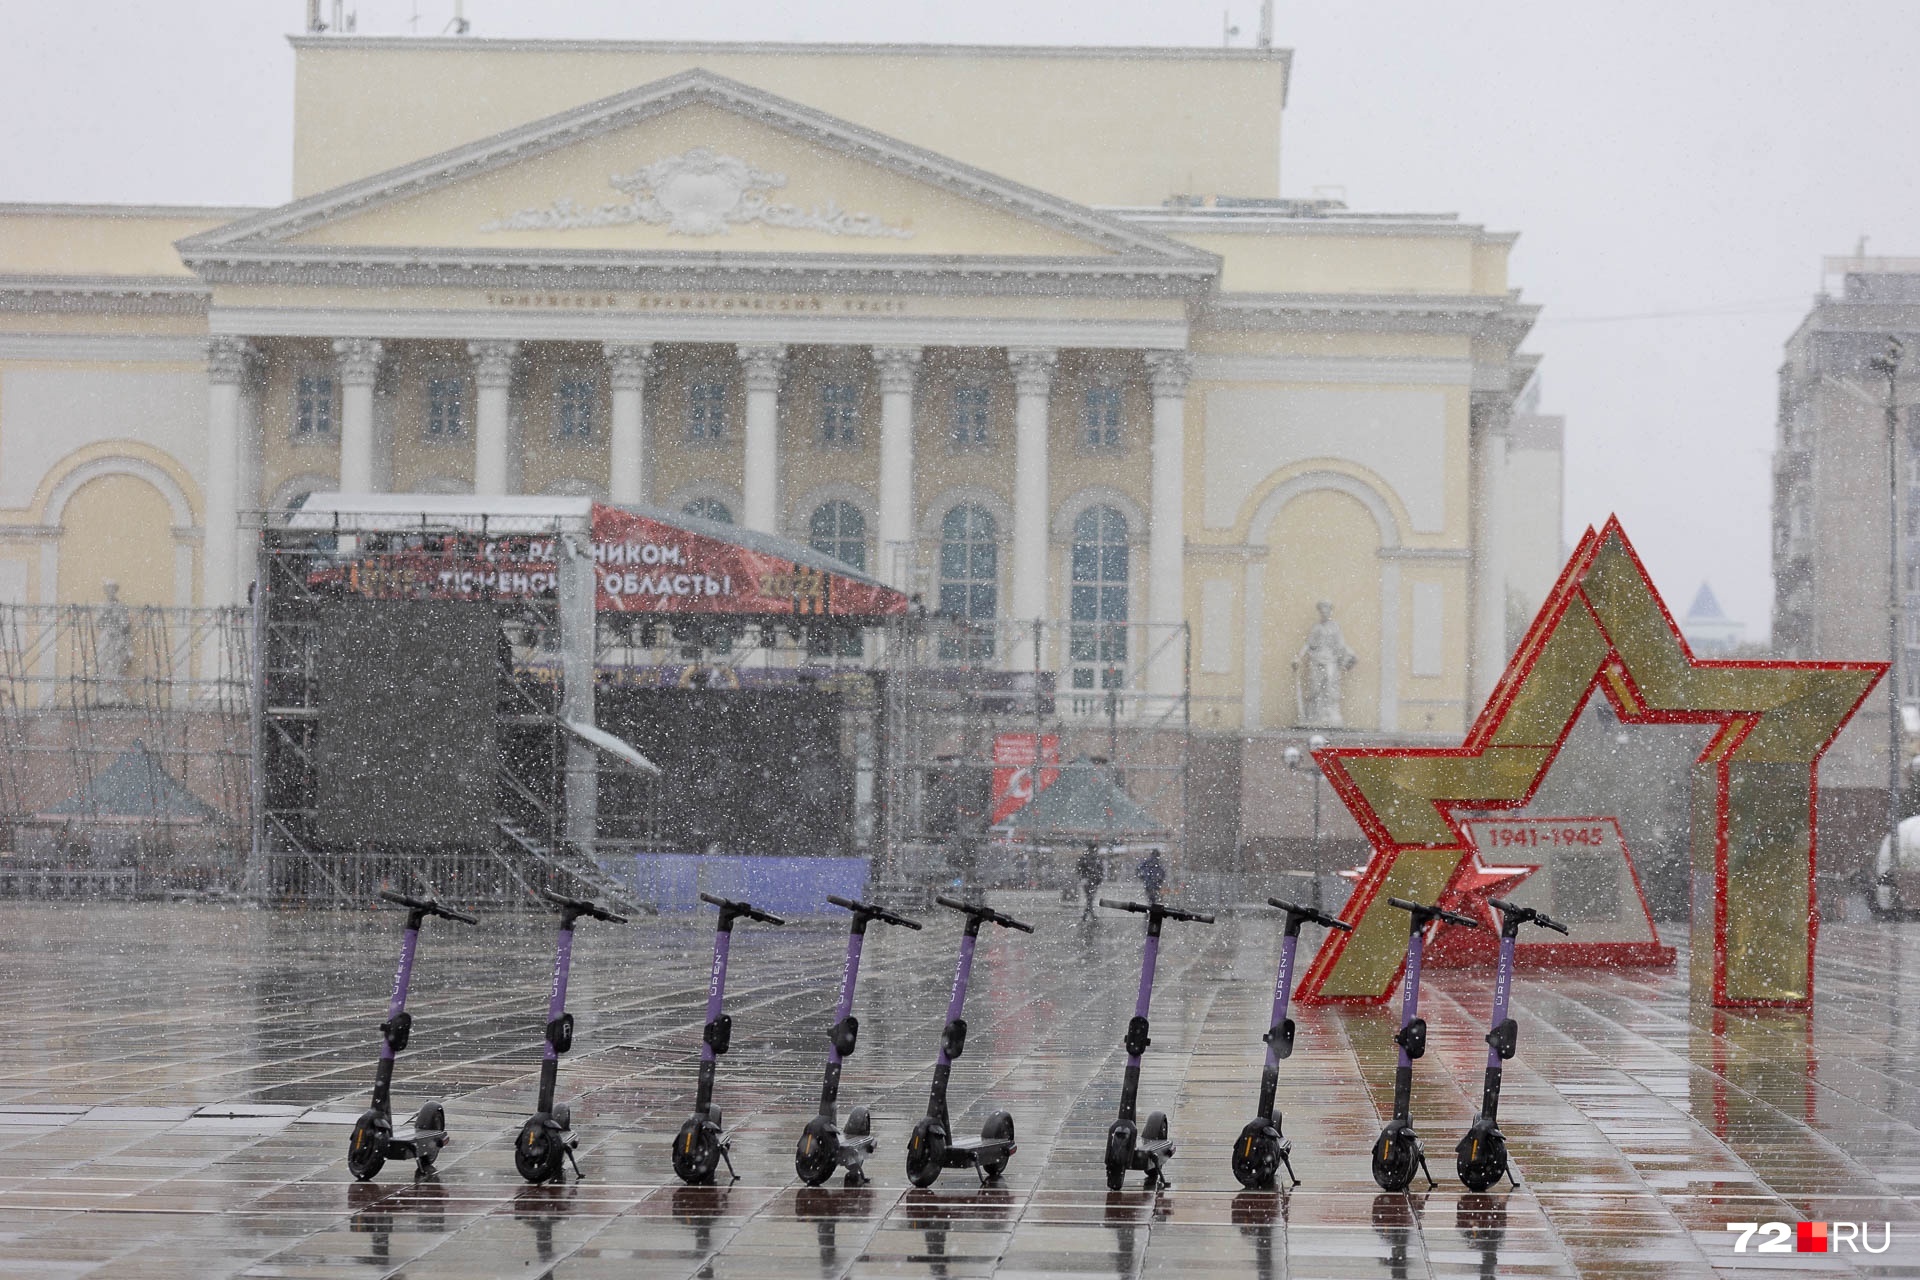 На площади у Драмтеатра стоят самокаты. Сомнительно, что кто-то их сегодня возьмет в такую погоду